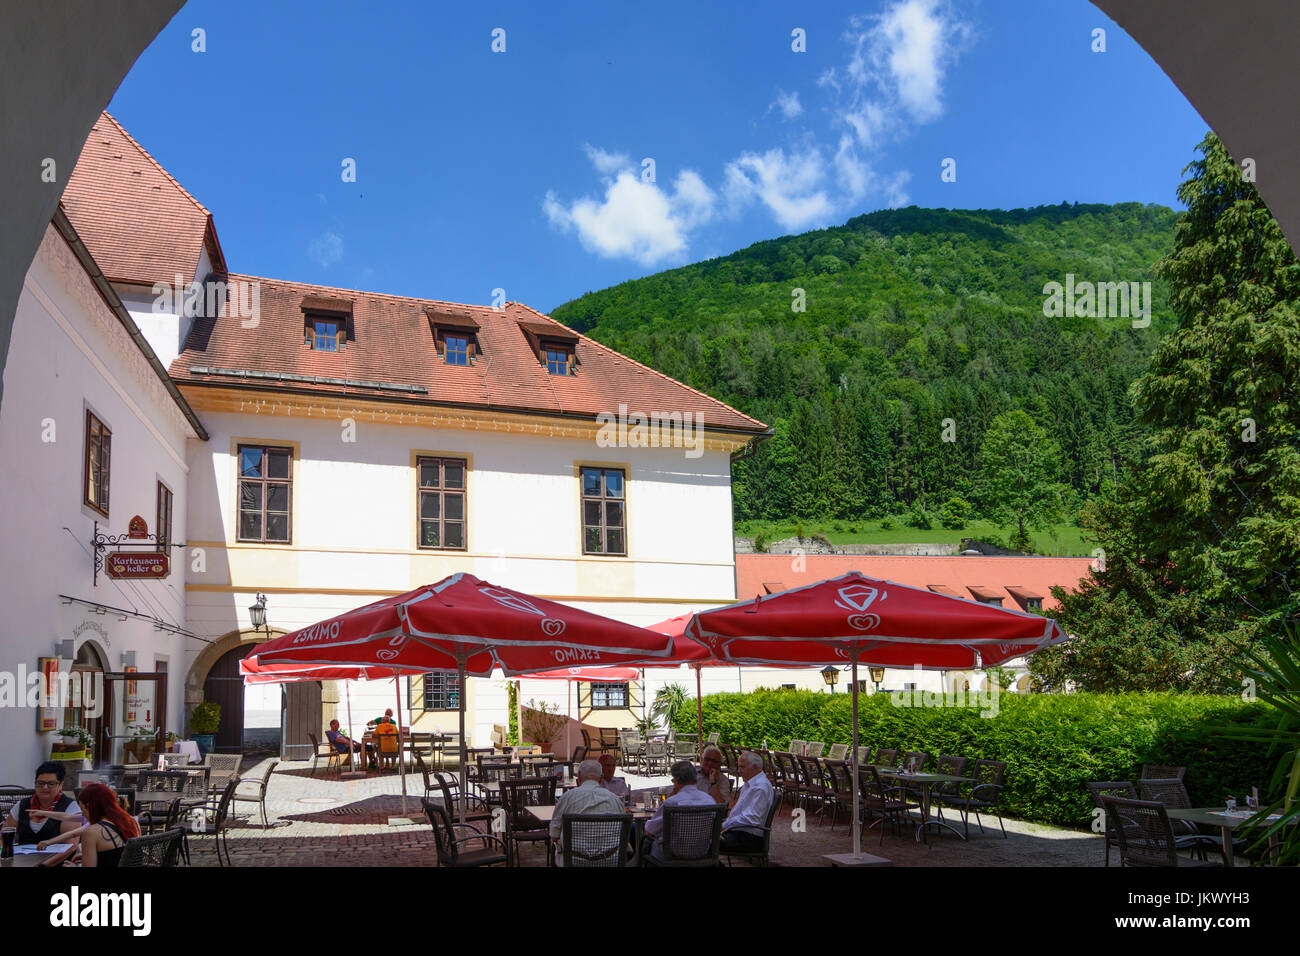 Kartause (Charterhouse) Gaming (Kartause Maria Thron), former Carthusian monastery, restaurant, Gaming, Mostviertel, Niederösterreich, Lower Austria,  Stock Photo